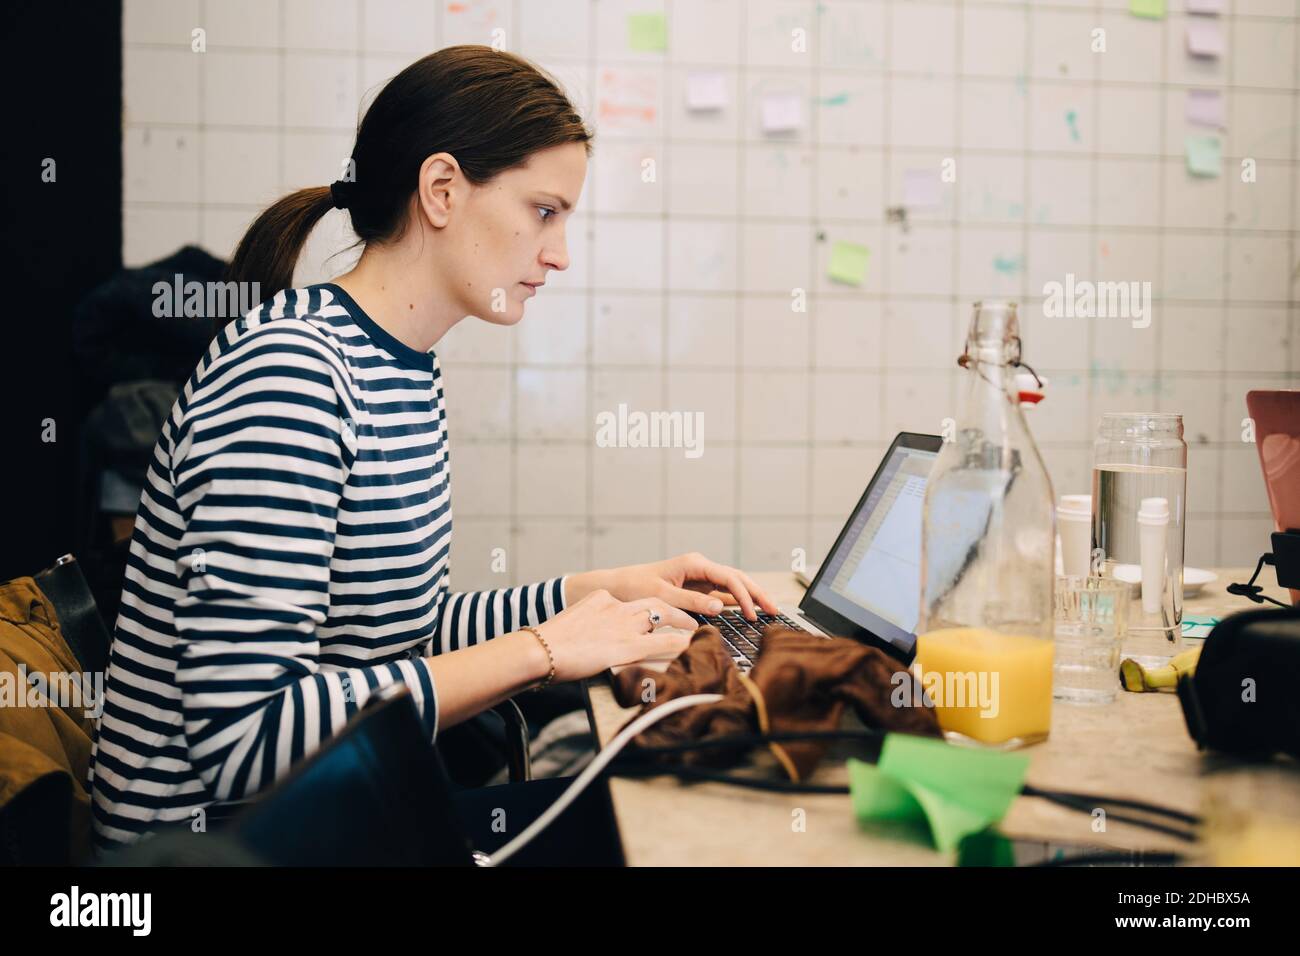 Vue latérale d'une jeune femme d'affaires qui crypte sur un ordinateur portable lorsqu'elle est assise au bureau dans un petit bureau Banque D'Images